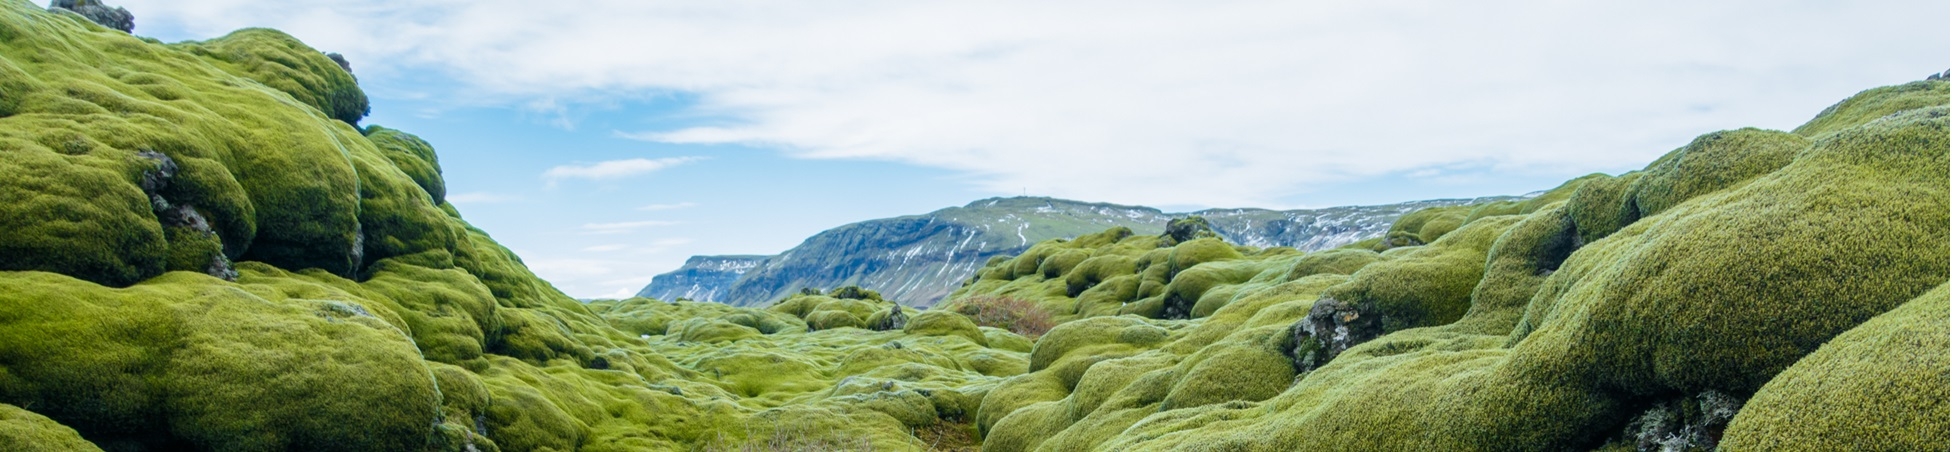 Green lava field in Iceland 